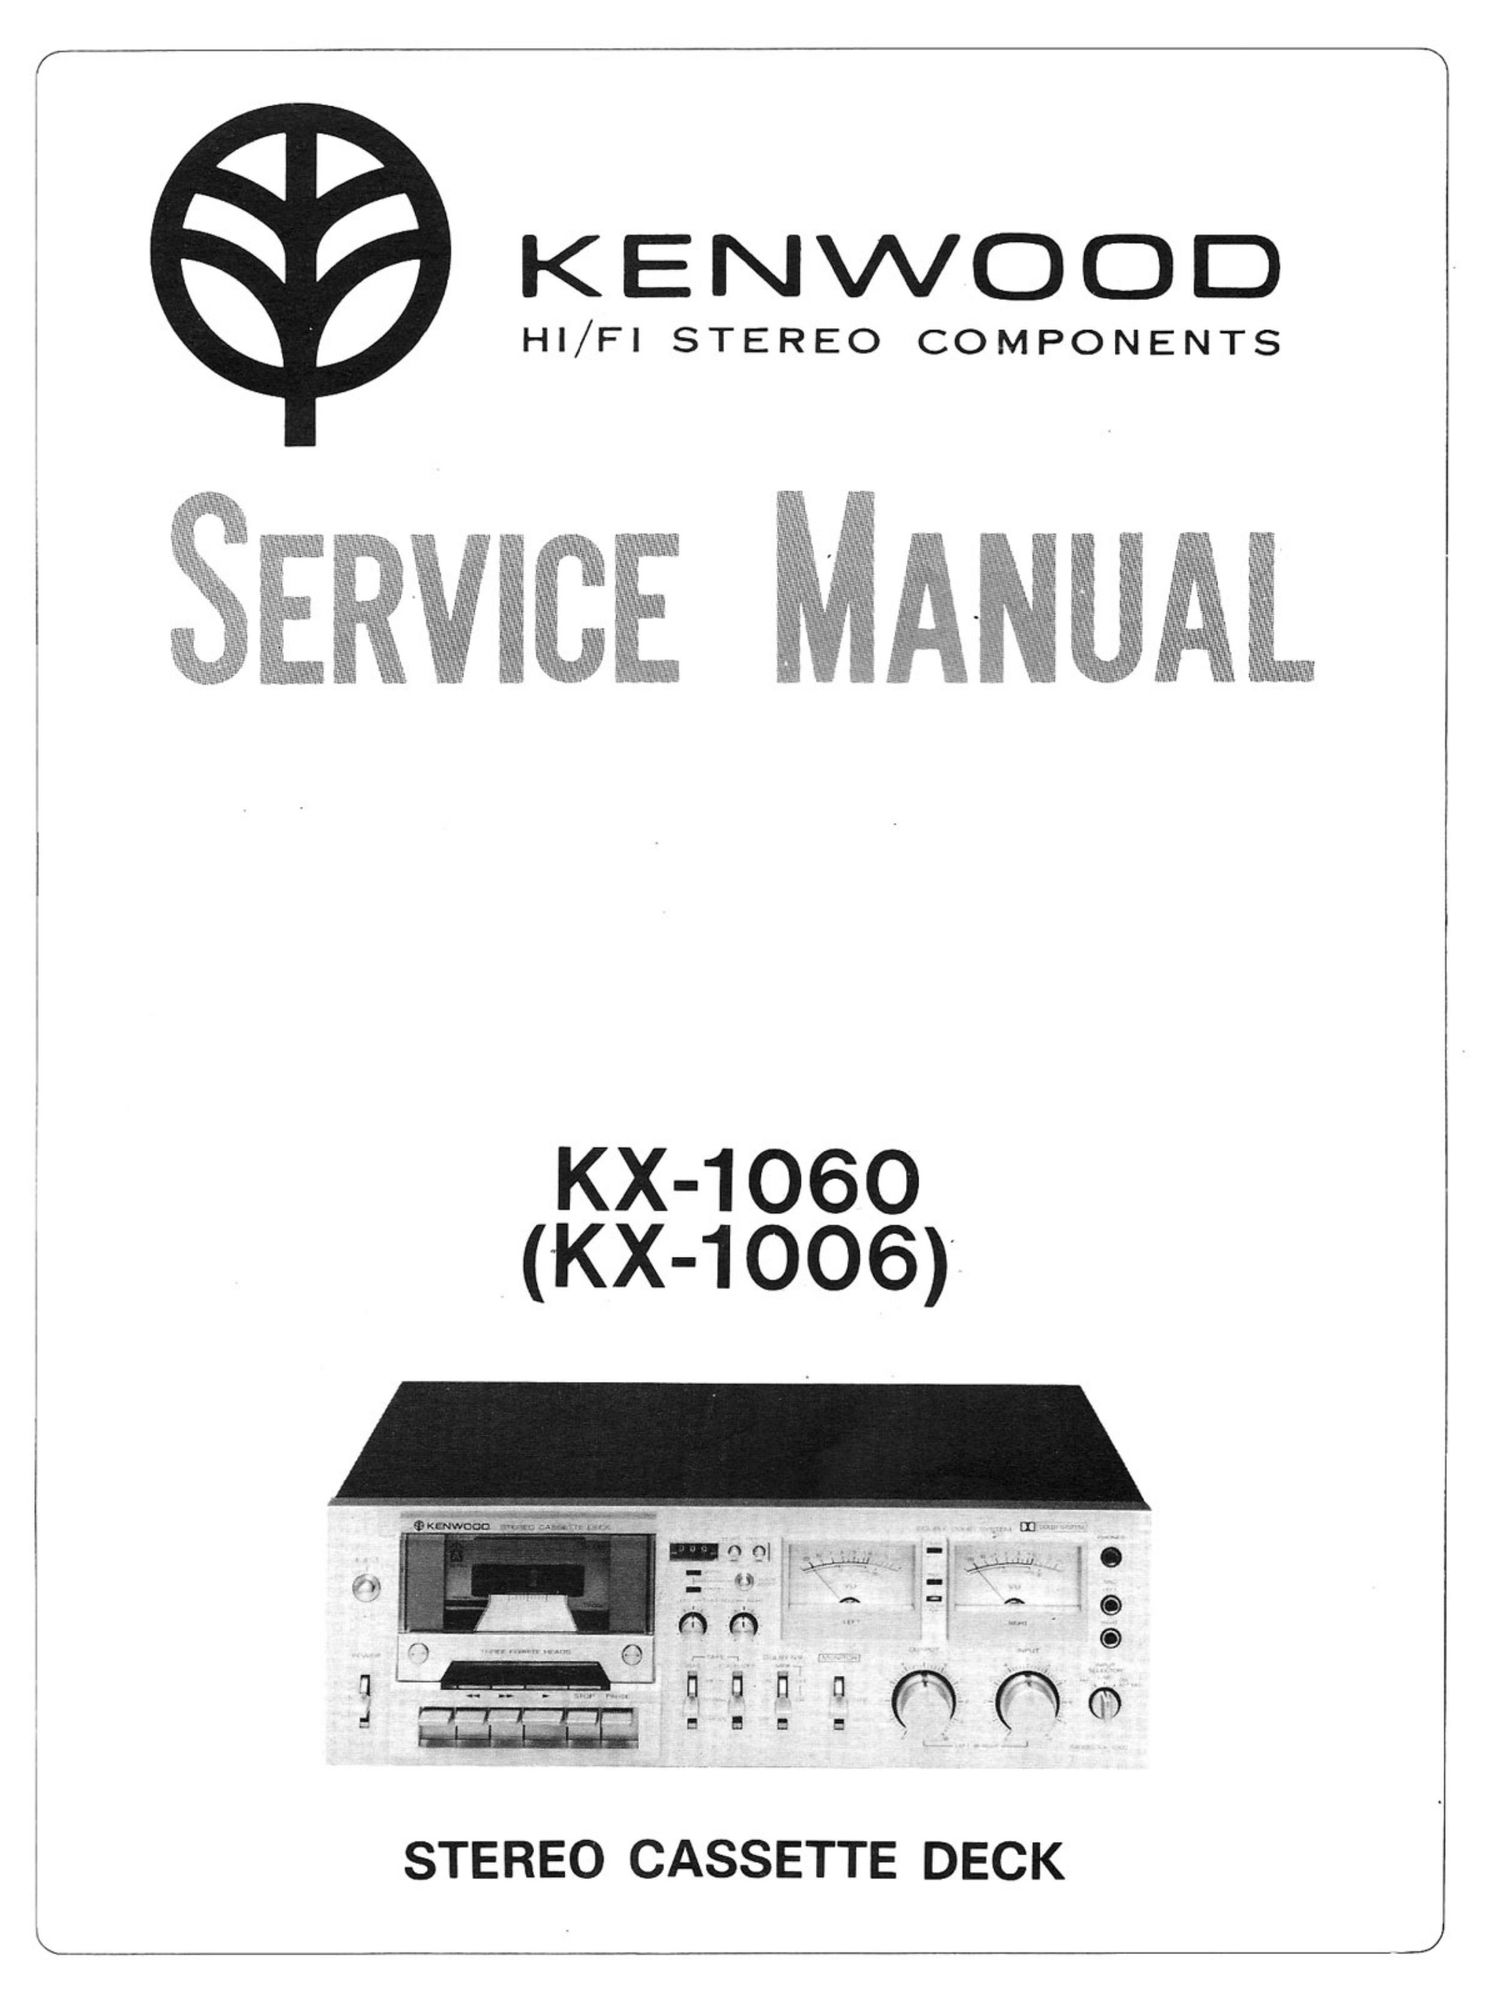 Kenwood 1060 Service Manual